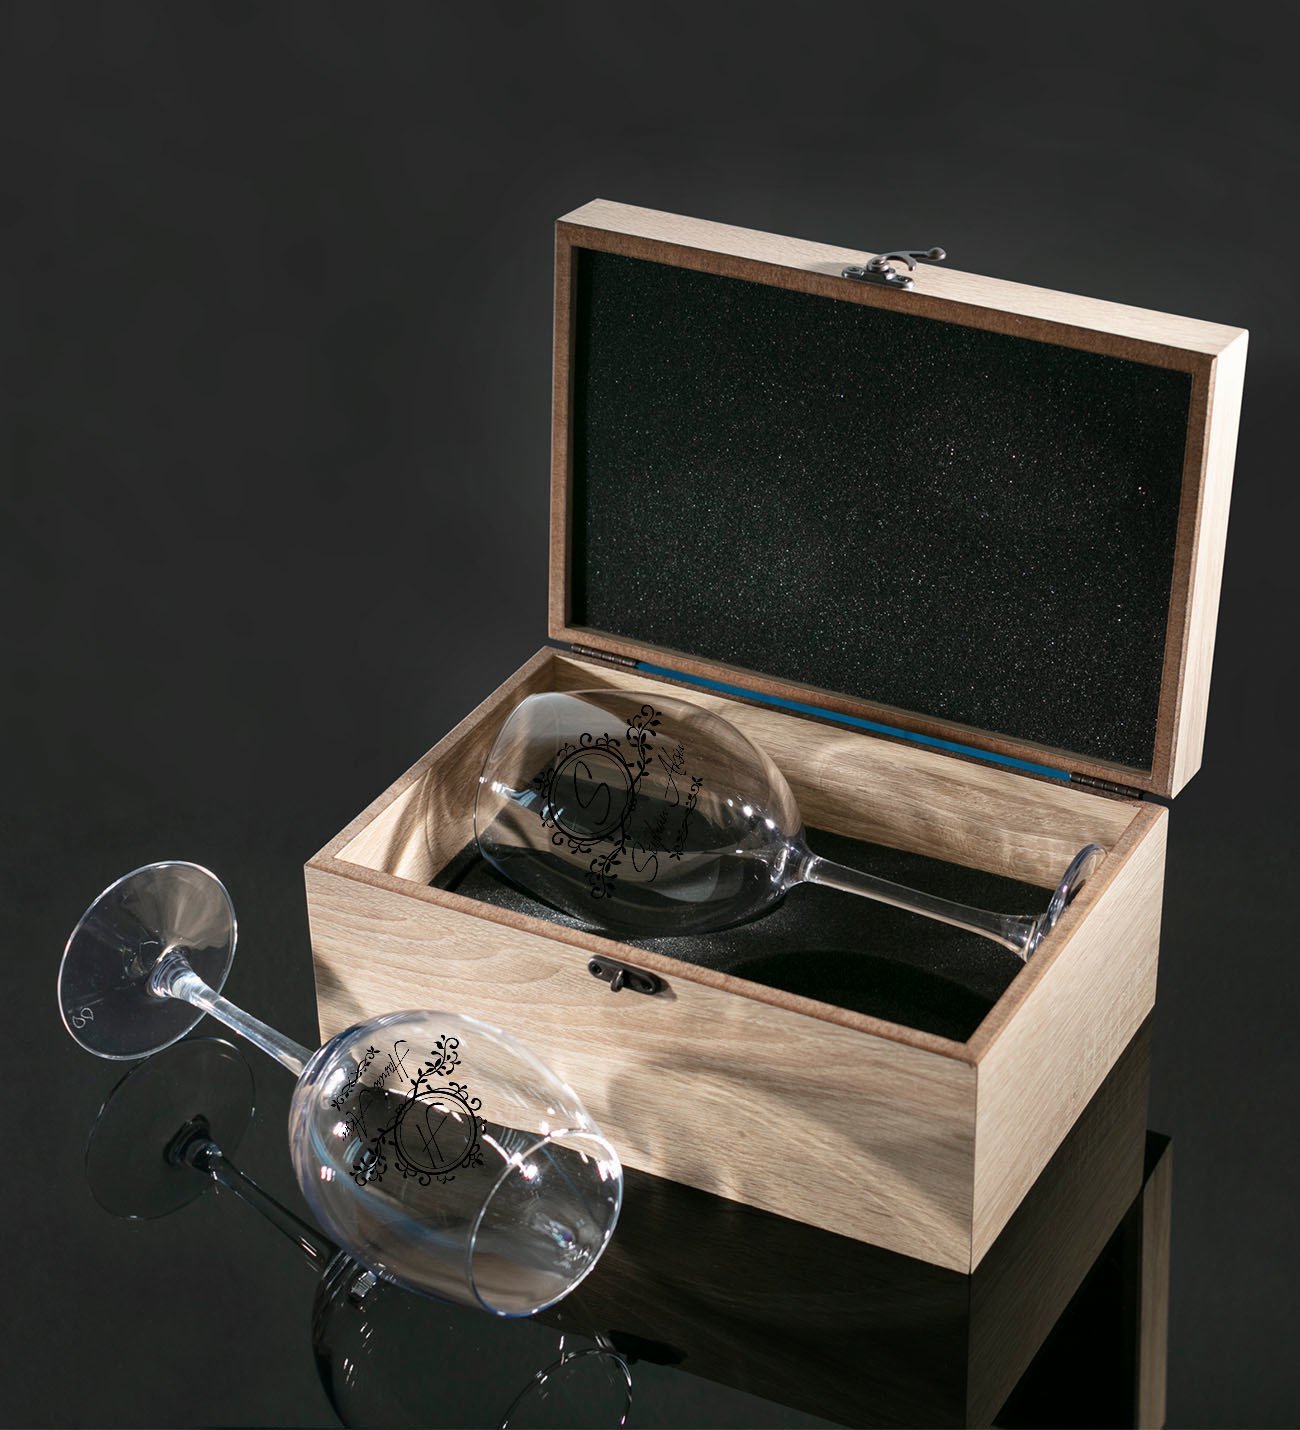 Kişiye Özel Ahşap Kutuda İsimli İkili Şarap Kadehi Hediye Seti Model 11